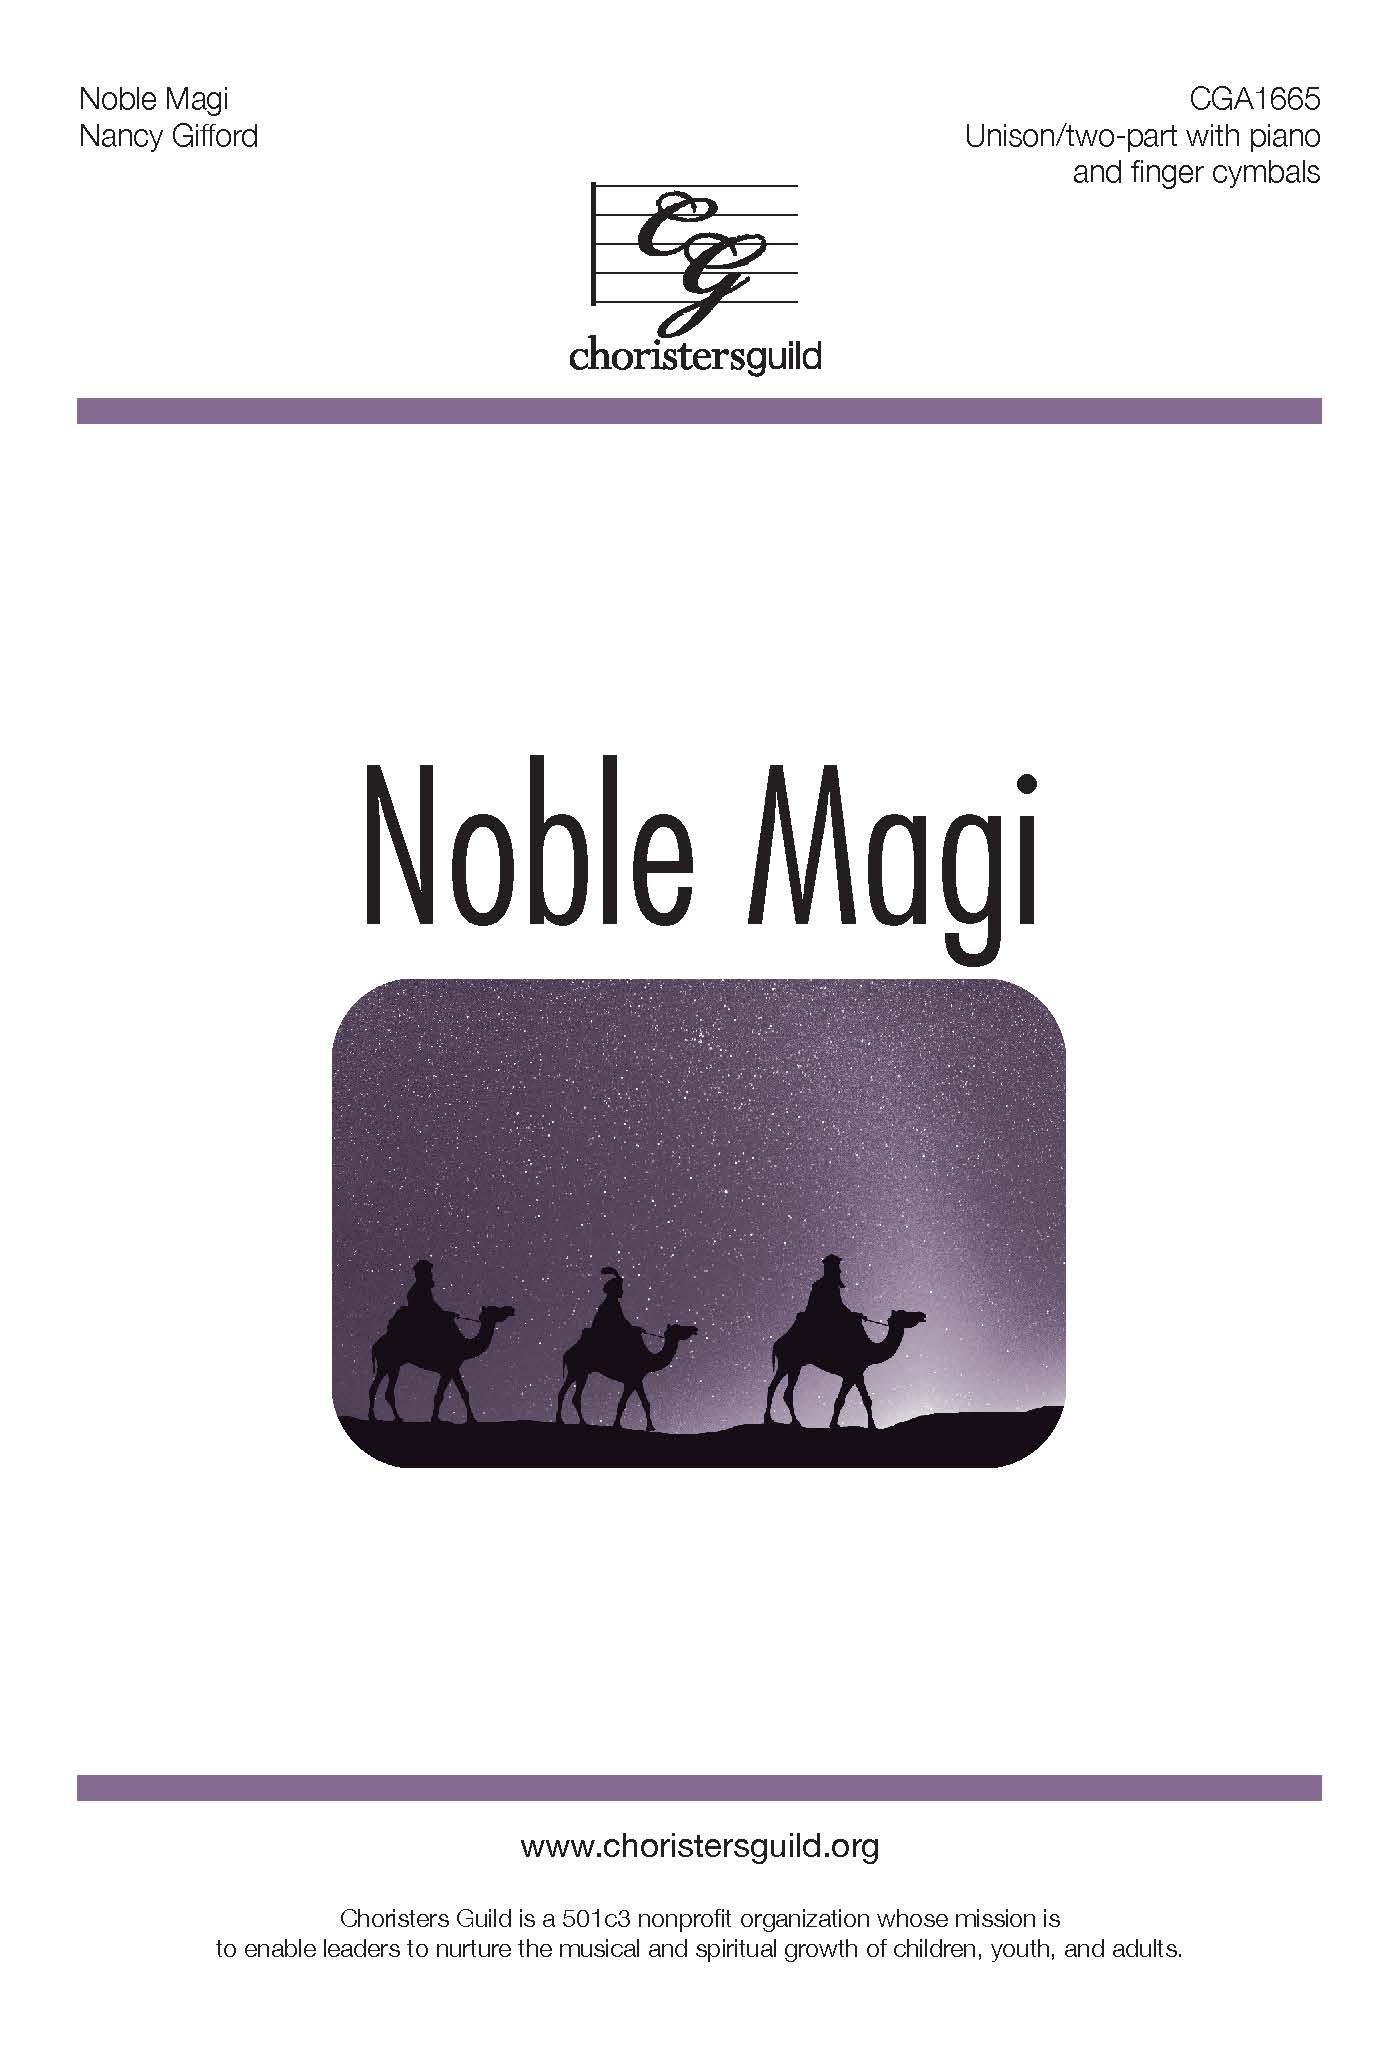 Noble Magi - Unison/Two-part